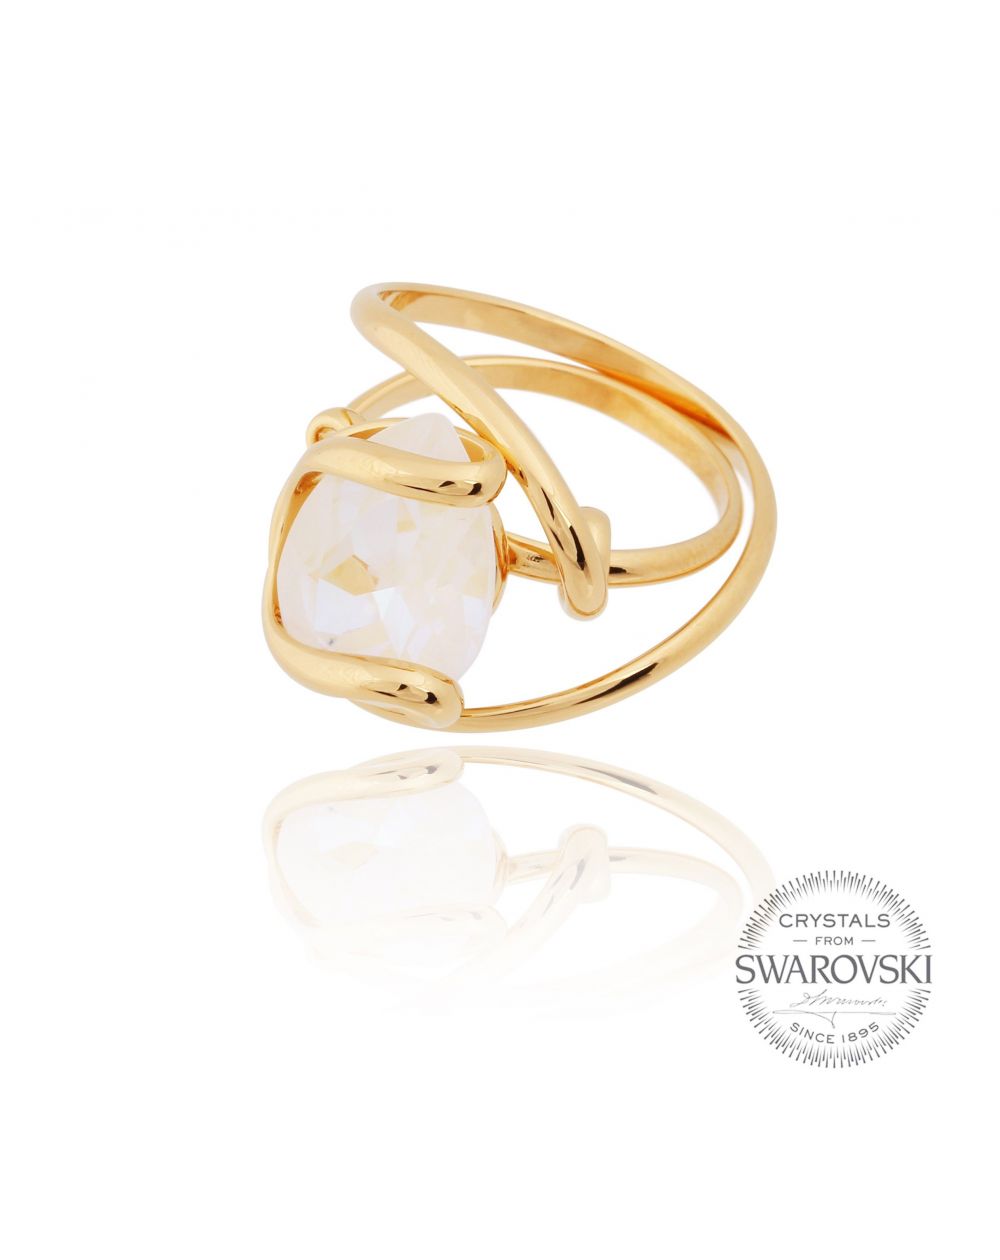 Marazzini - oval ring crystal Swarovski white delite